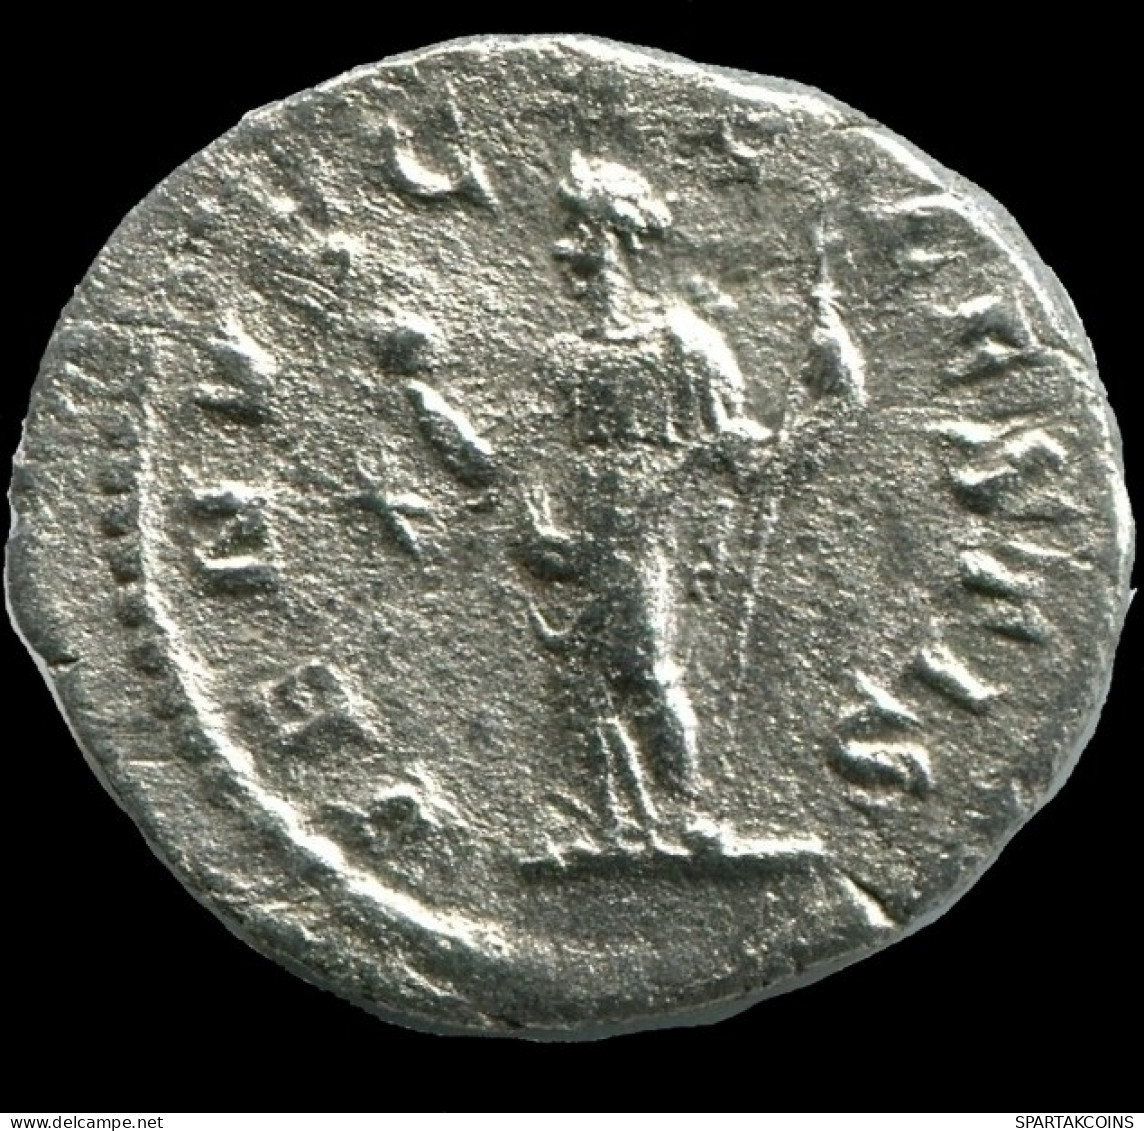 JULIA SOAEMIAS AR DENARIUS AD 218 - 222 VENVS CAELESTIS - VENUS #ANC12342.78.U.A - The Severans (193 AD To 235 AD)